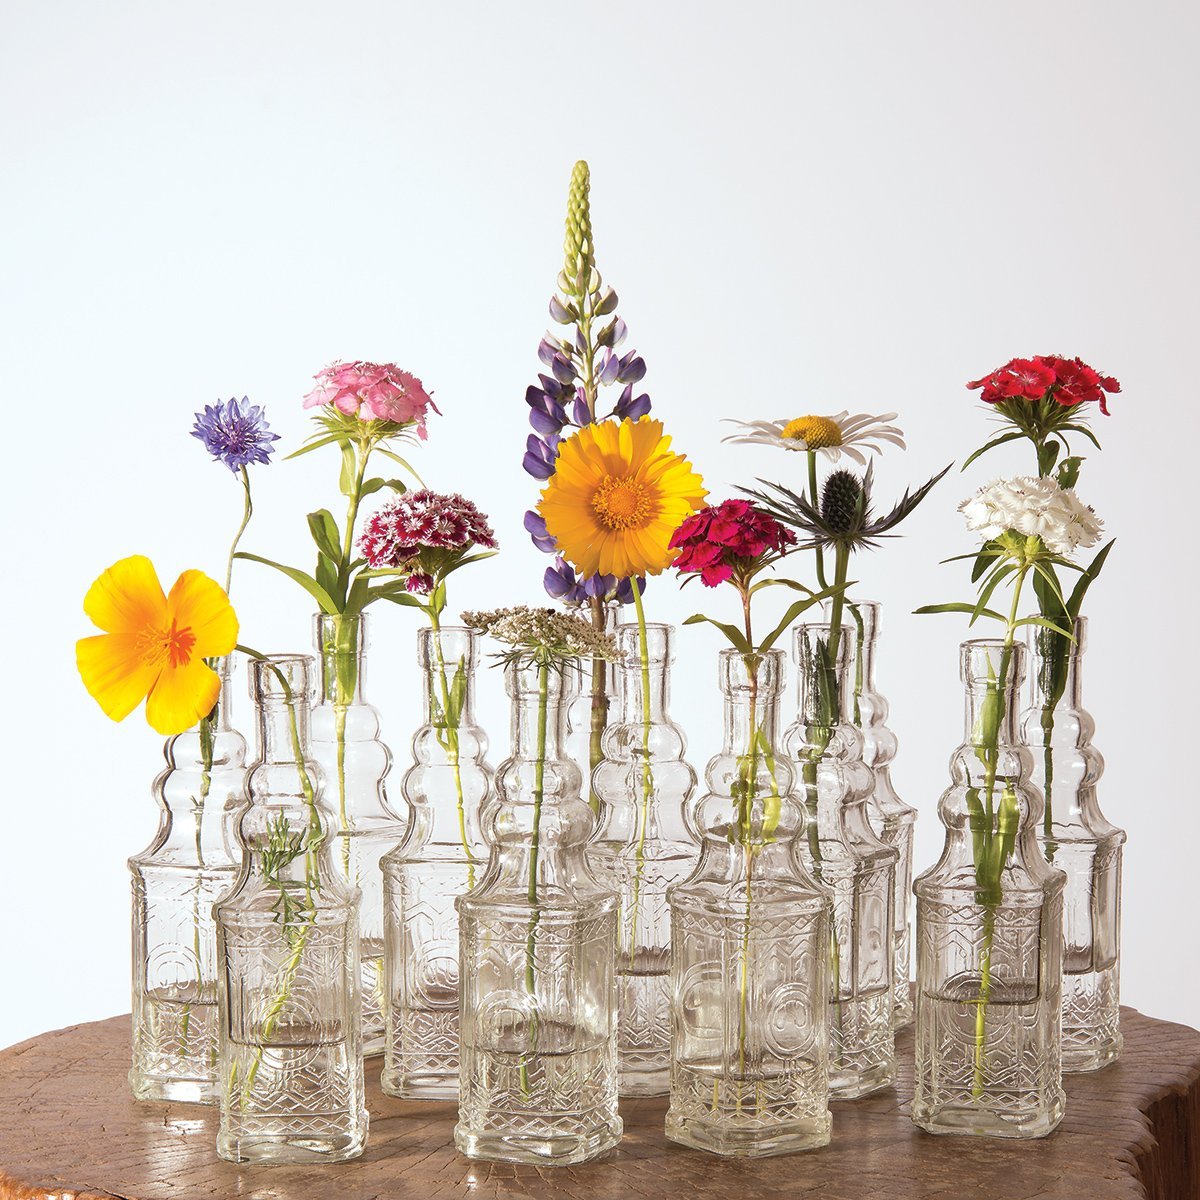 3 Pack | 6.5" Ella Clear Vintage Glass Bottle with Cork - DIY Wedding Flower Bud Vases - PaperLanternStore.com - Paper Lanterns, Decor, Party Lights & More